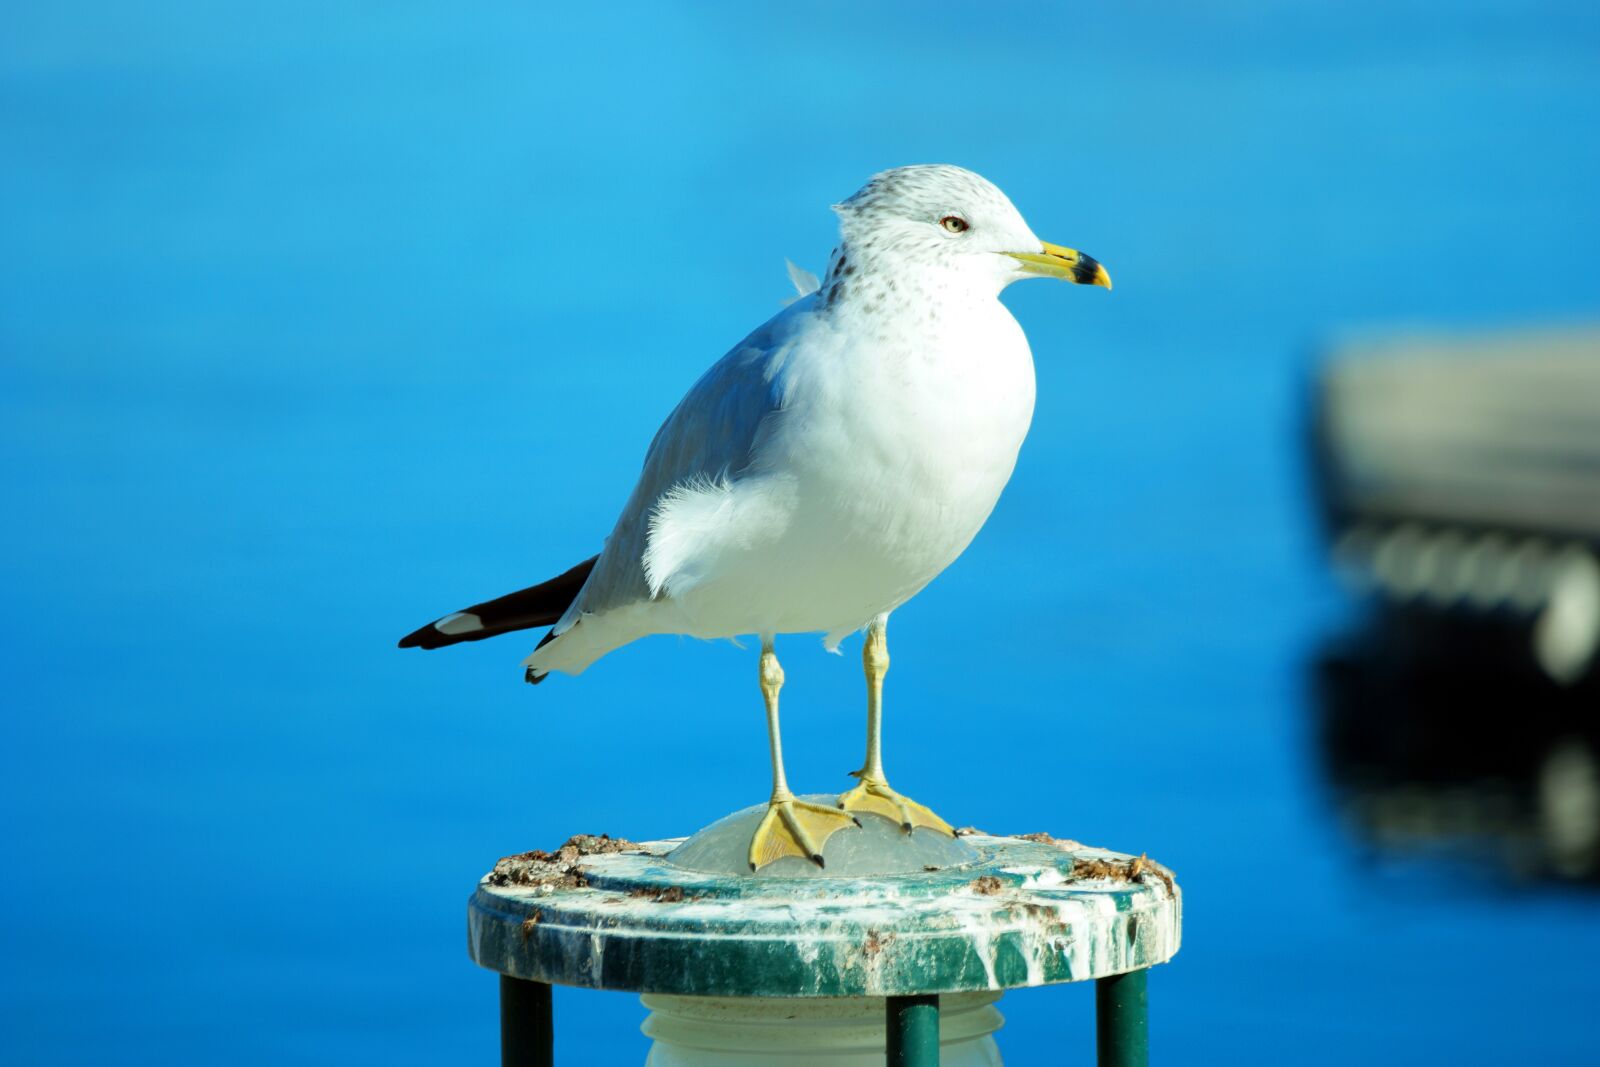 Samsung NX1 sample photo. Seagull, bird, gull photography